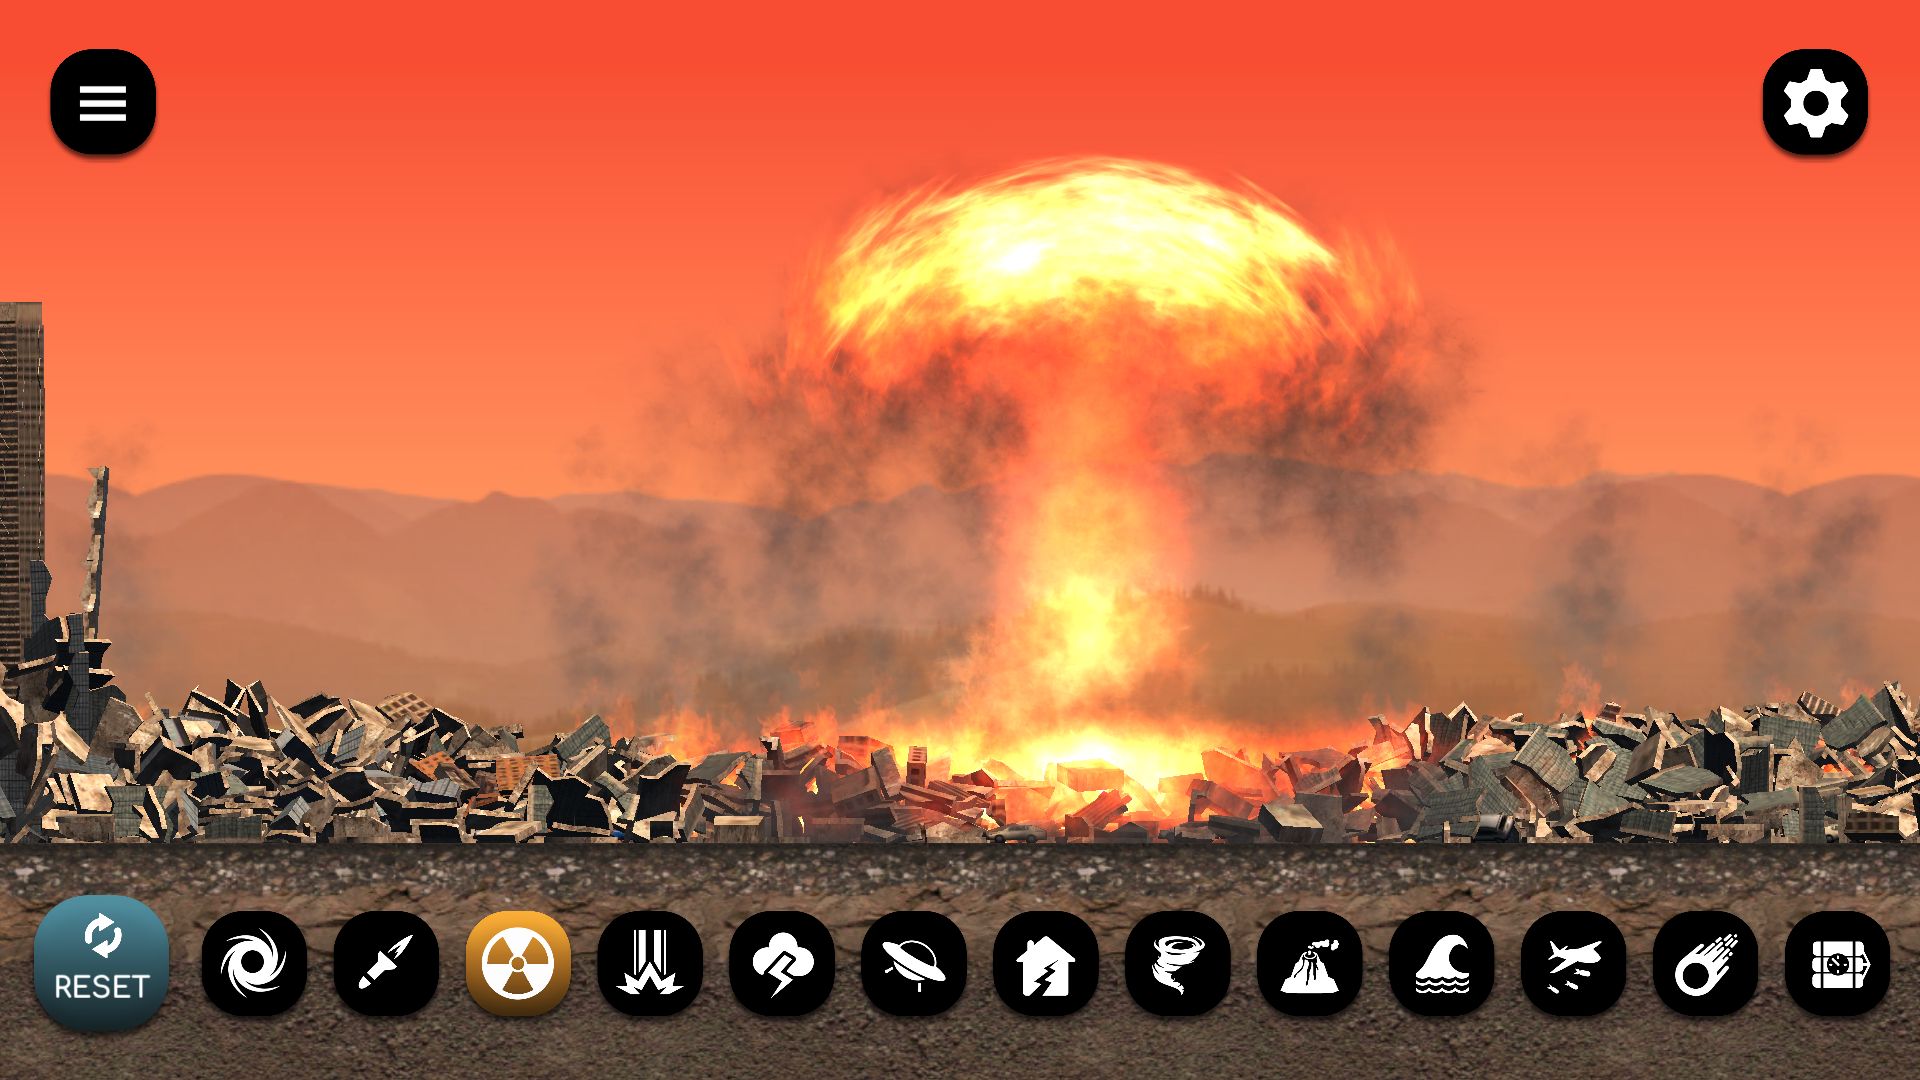 City Smash - Android game screenshots.